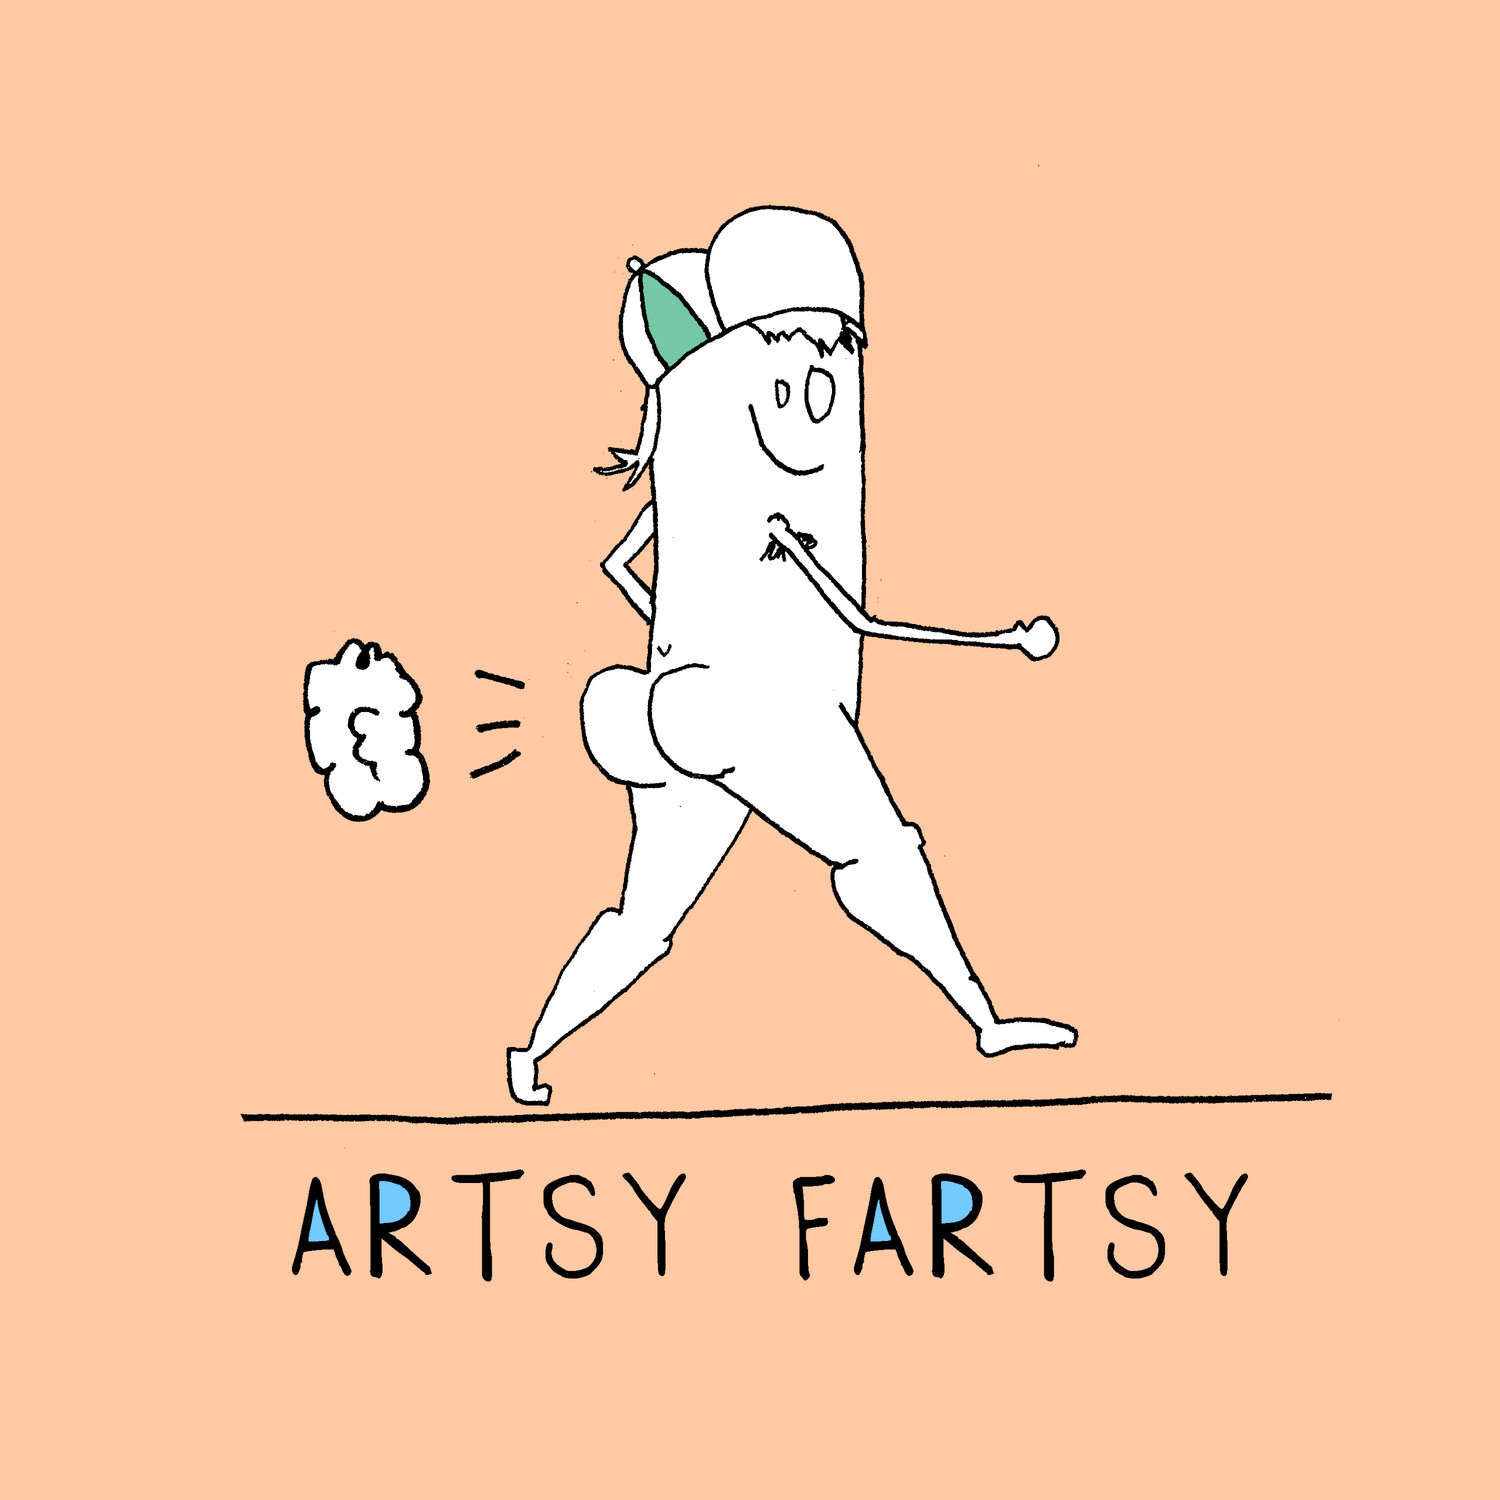 Artsy Fartsy - Sticker by Sarah Maloney